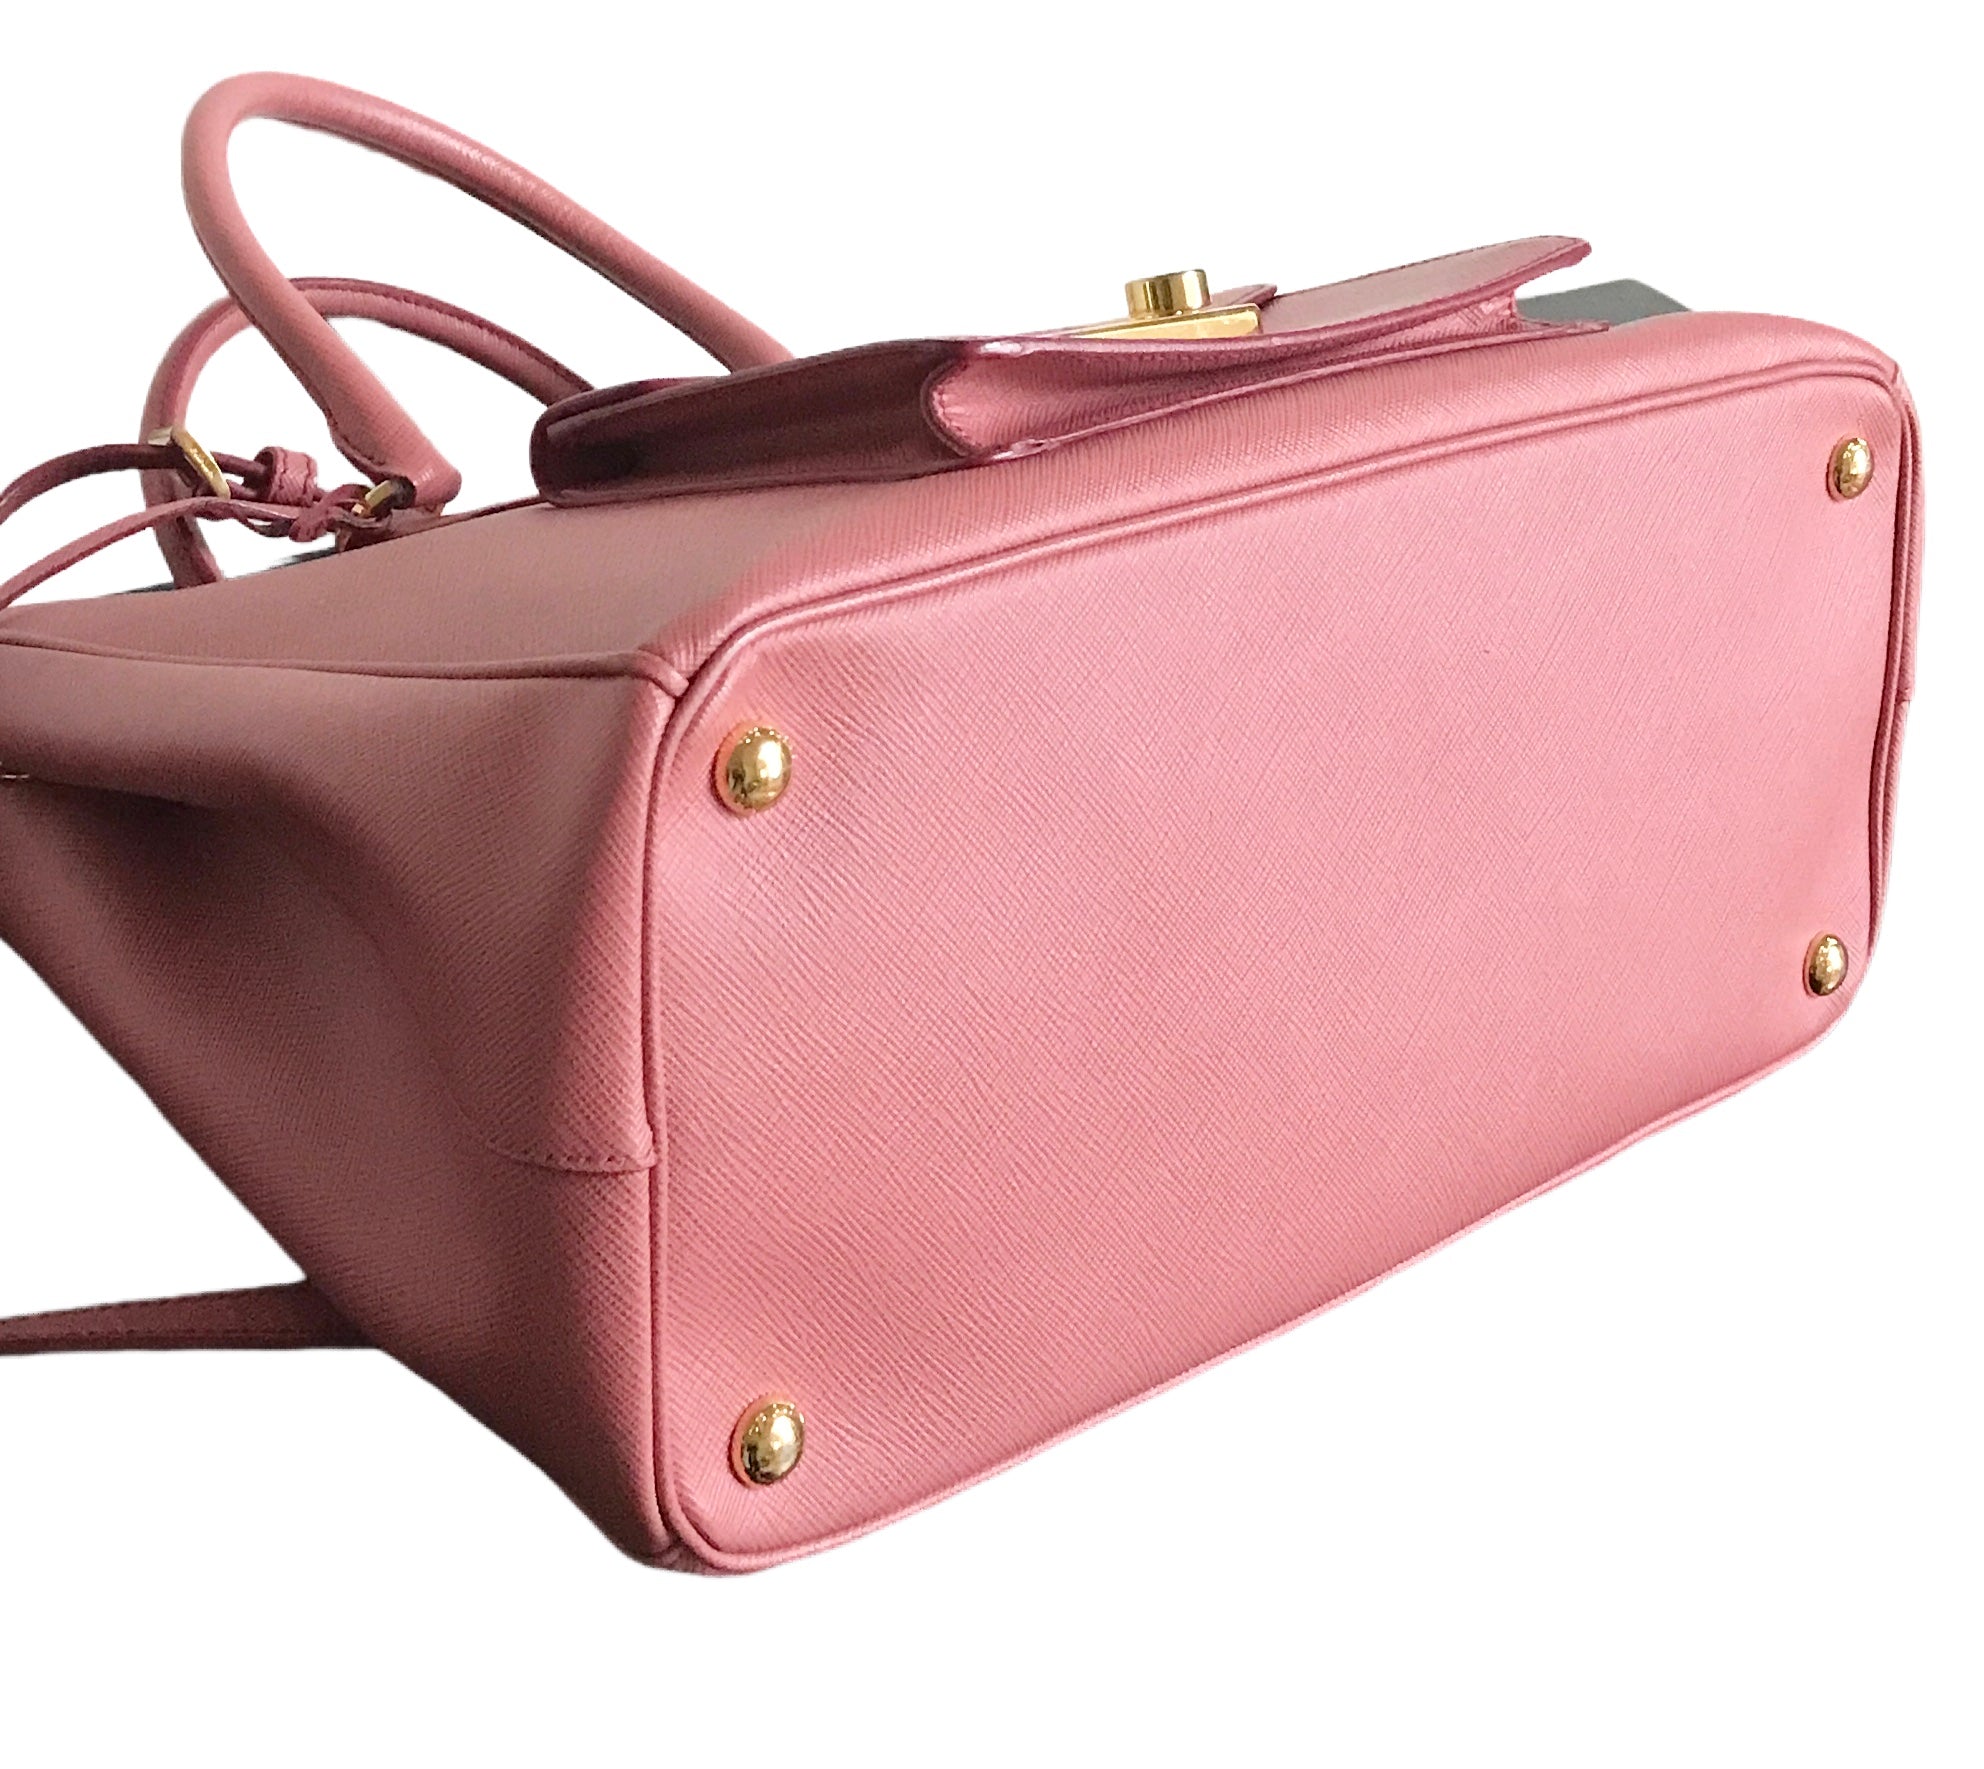 Prada Small Galleria Tote Bag In Pink